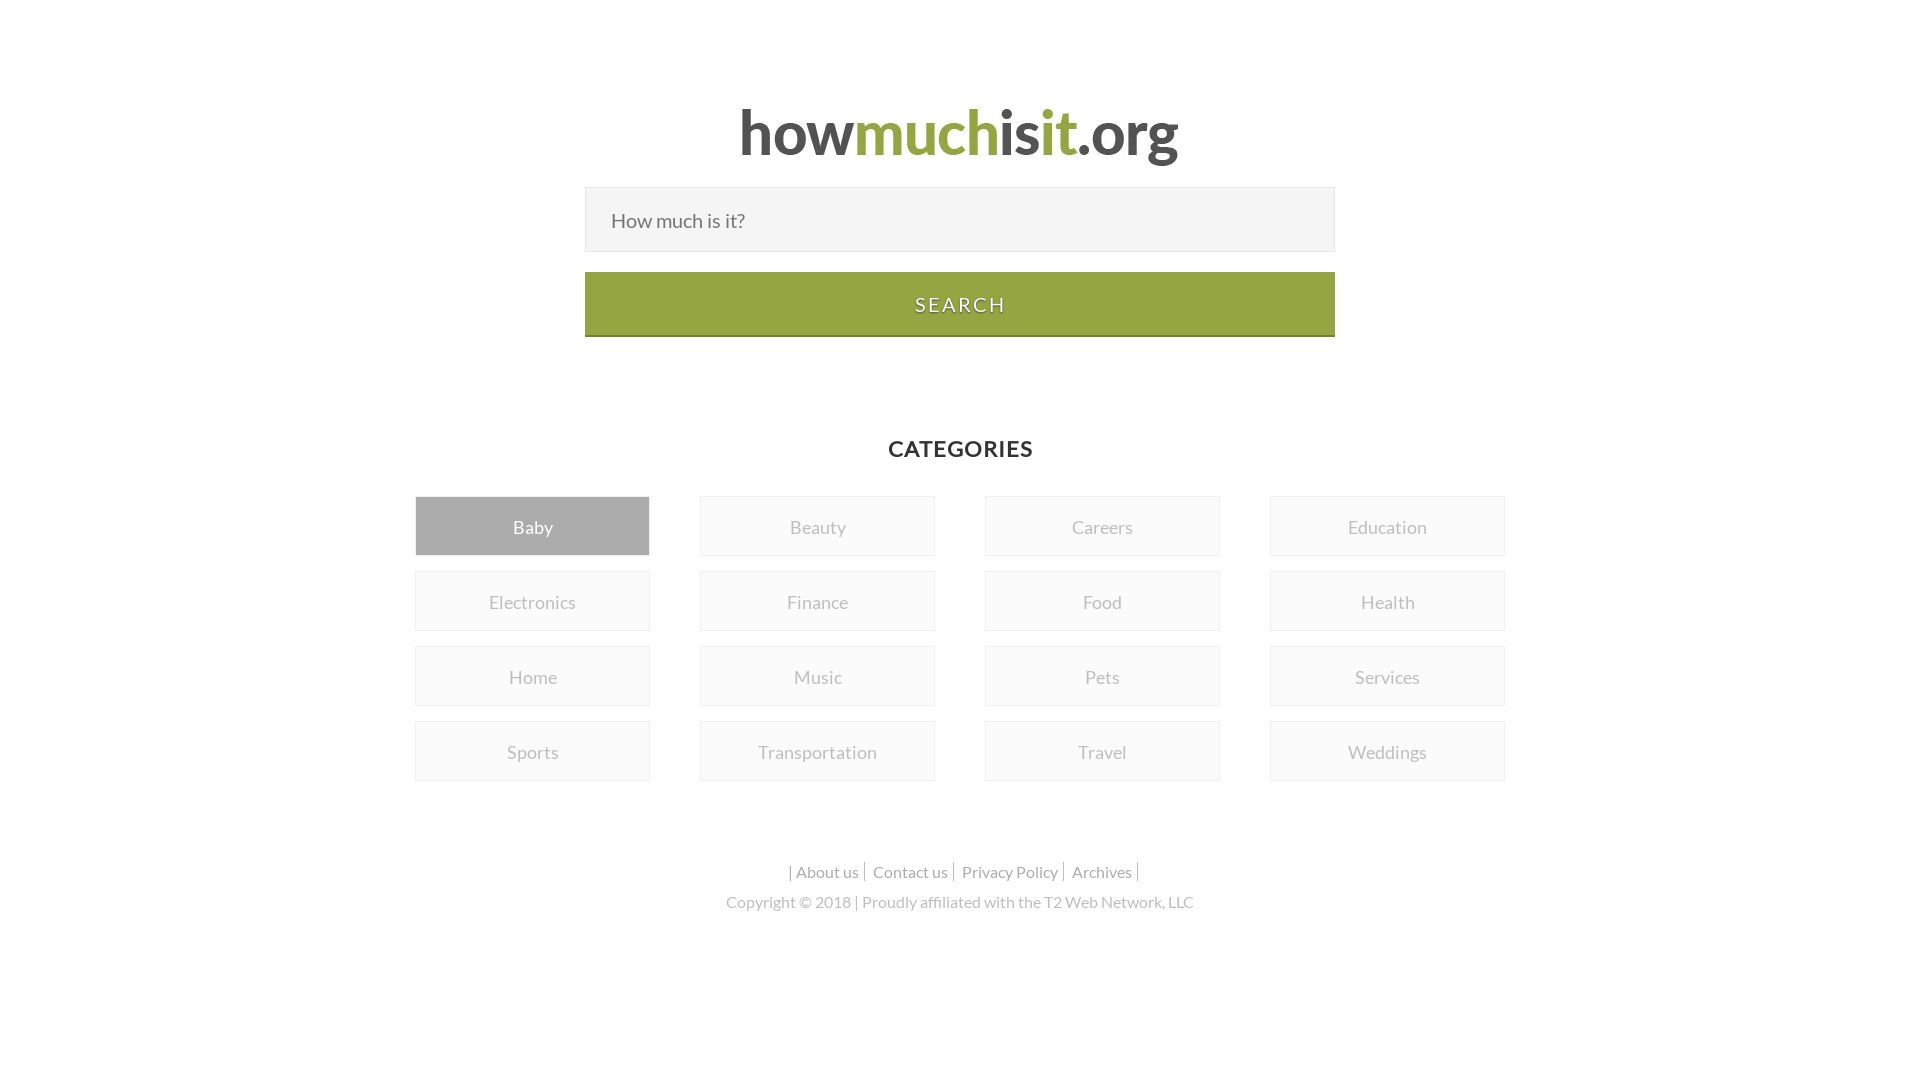 网站状态 howmuchisit.org 是  在线的